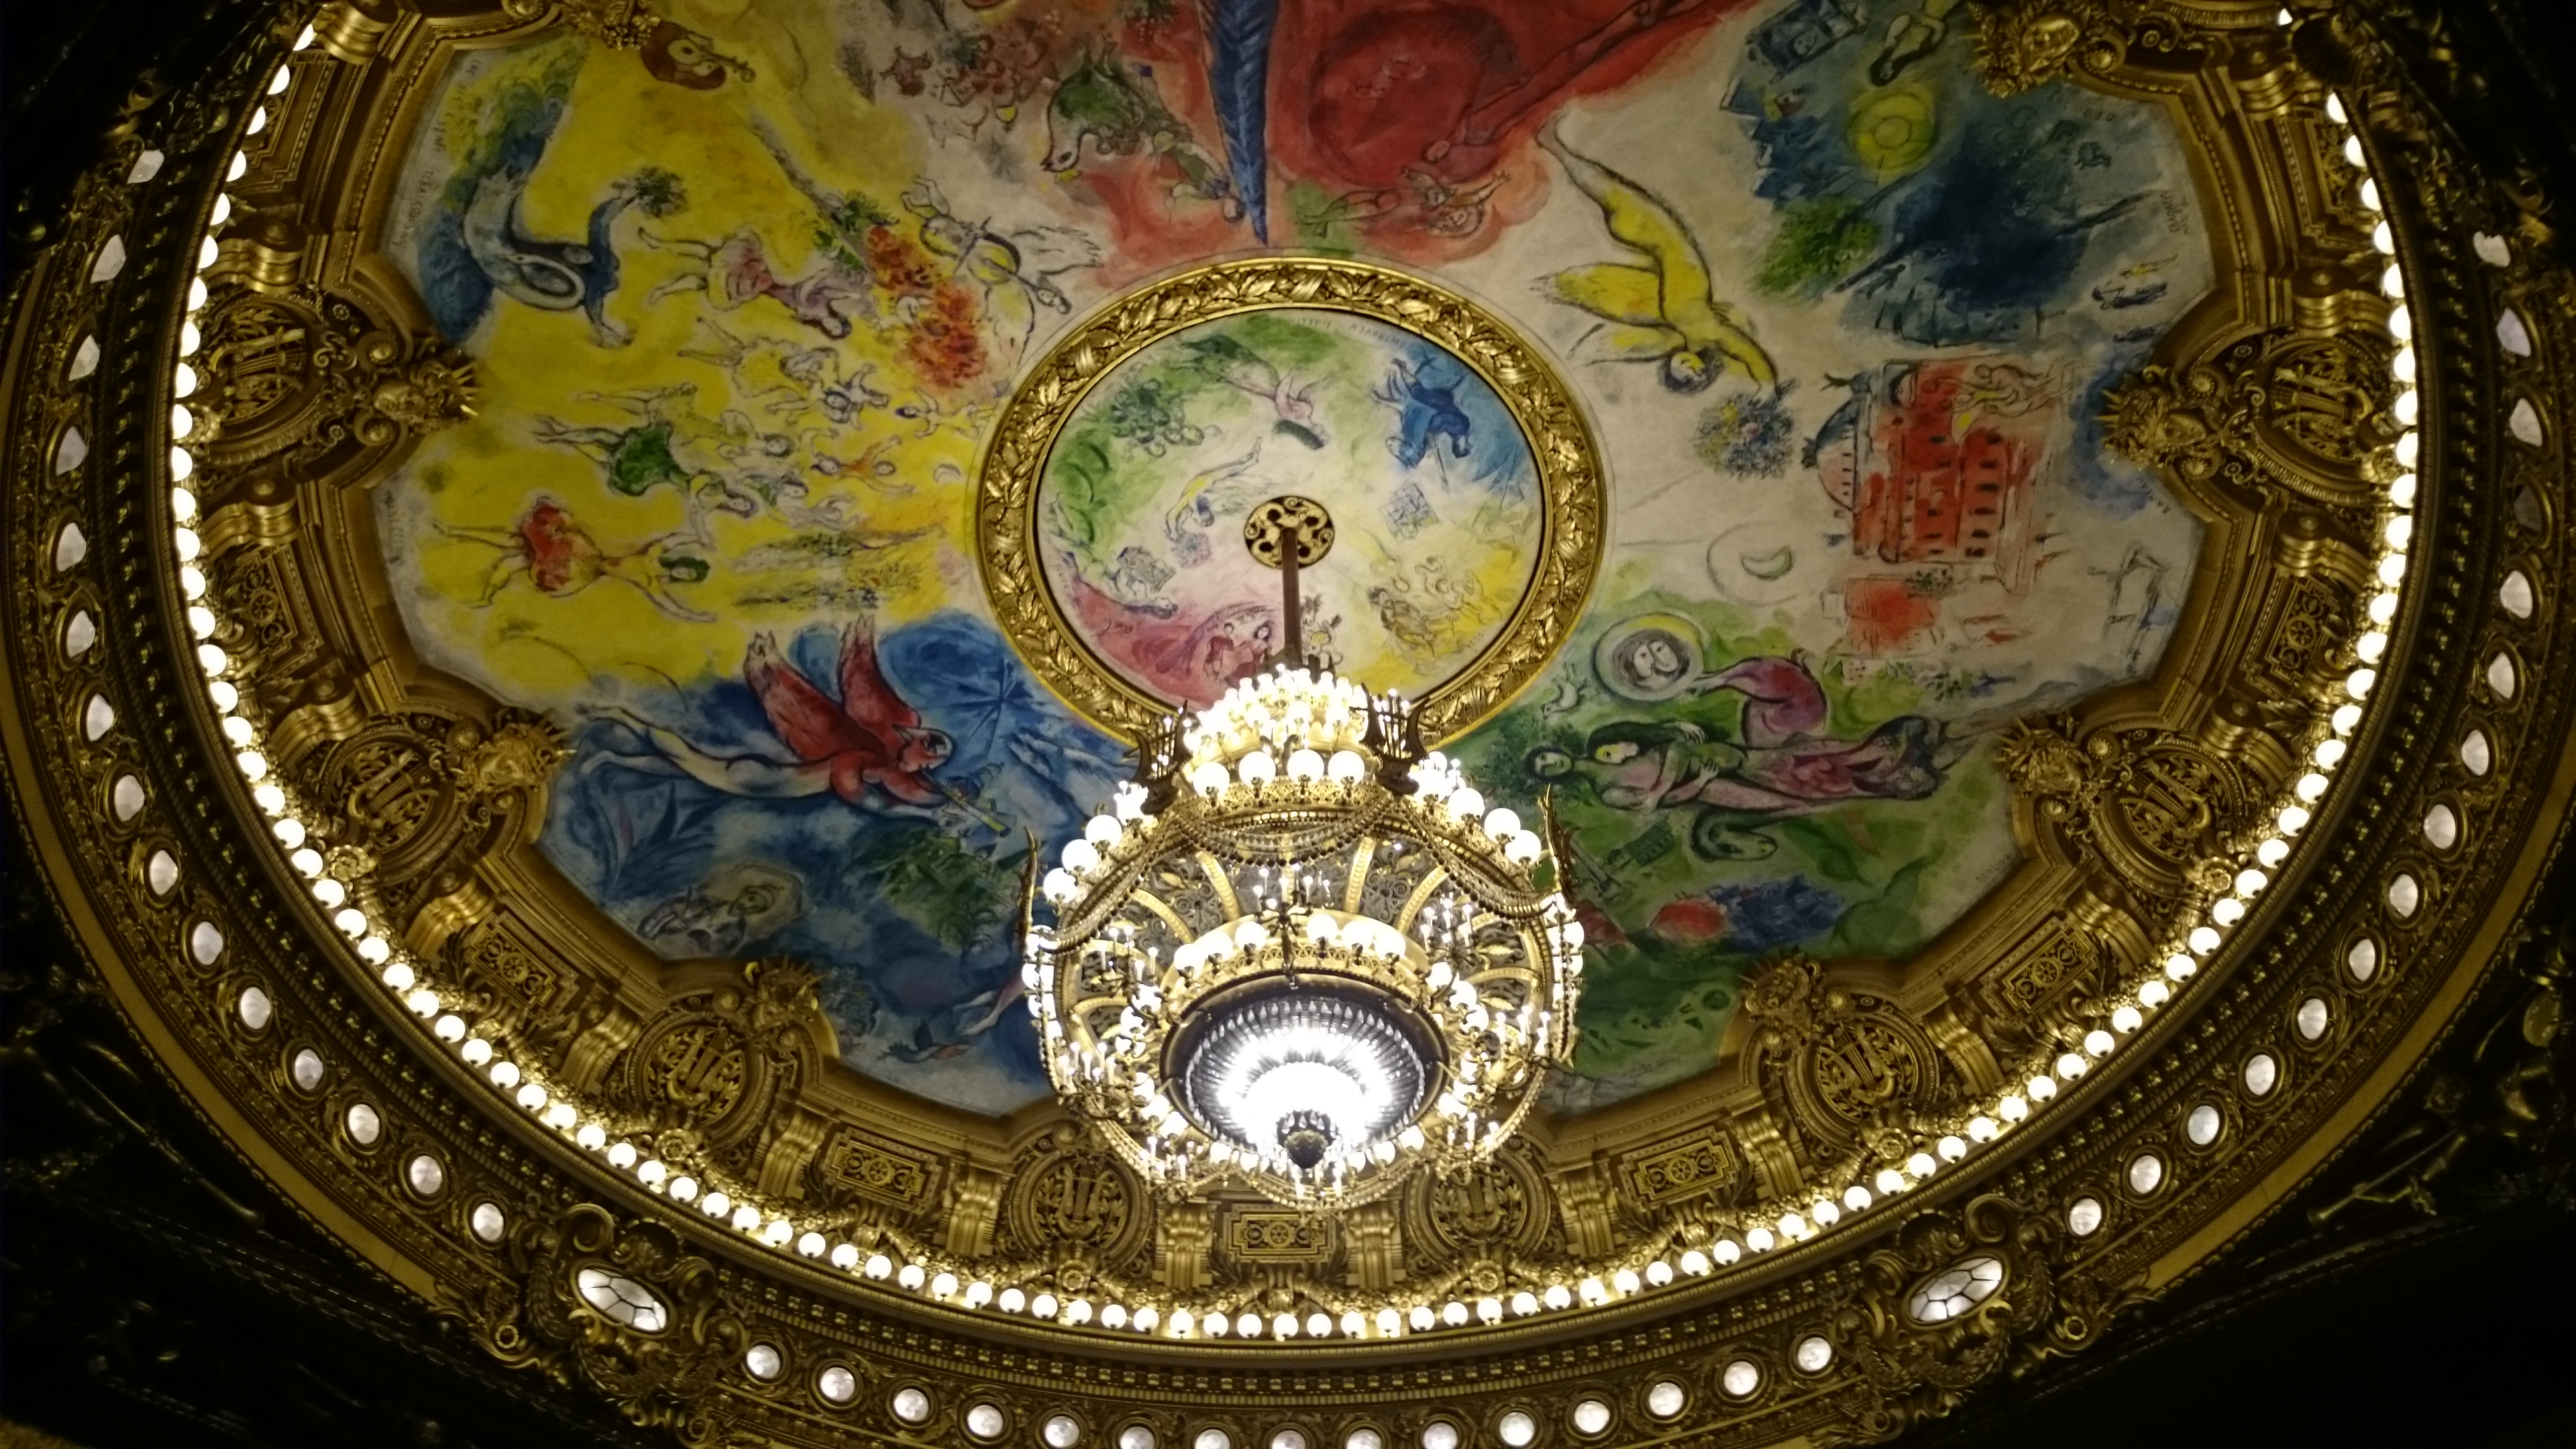 dsc 1024 - Una visita a la Opera de Paris (Palais Garnier)